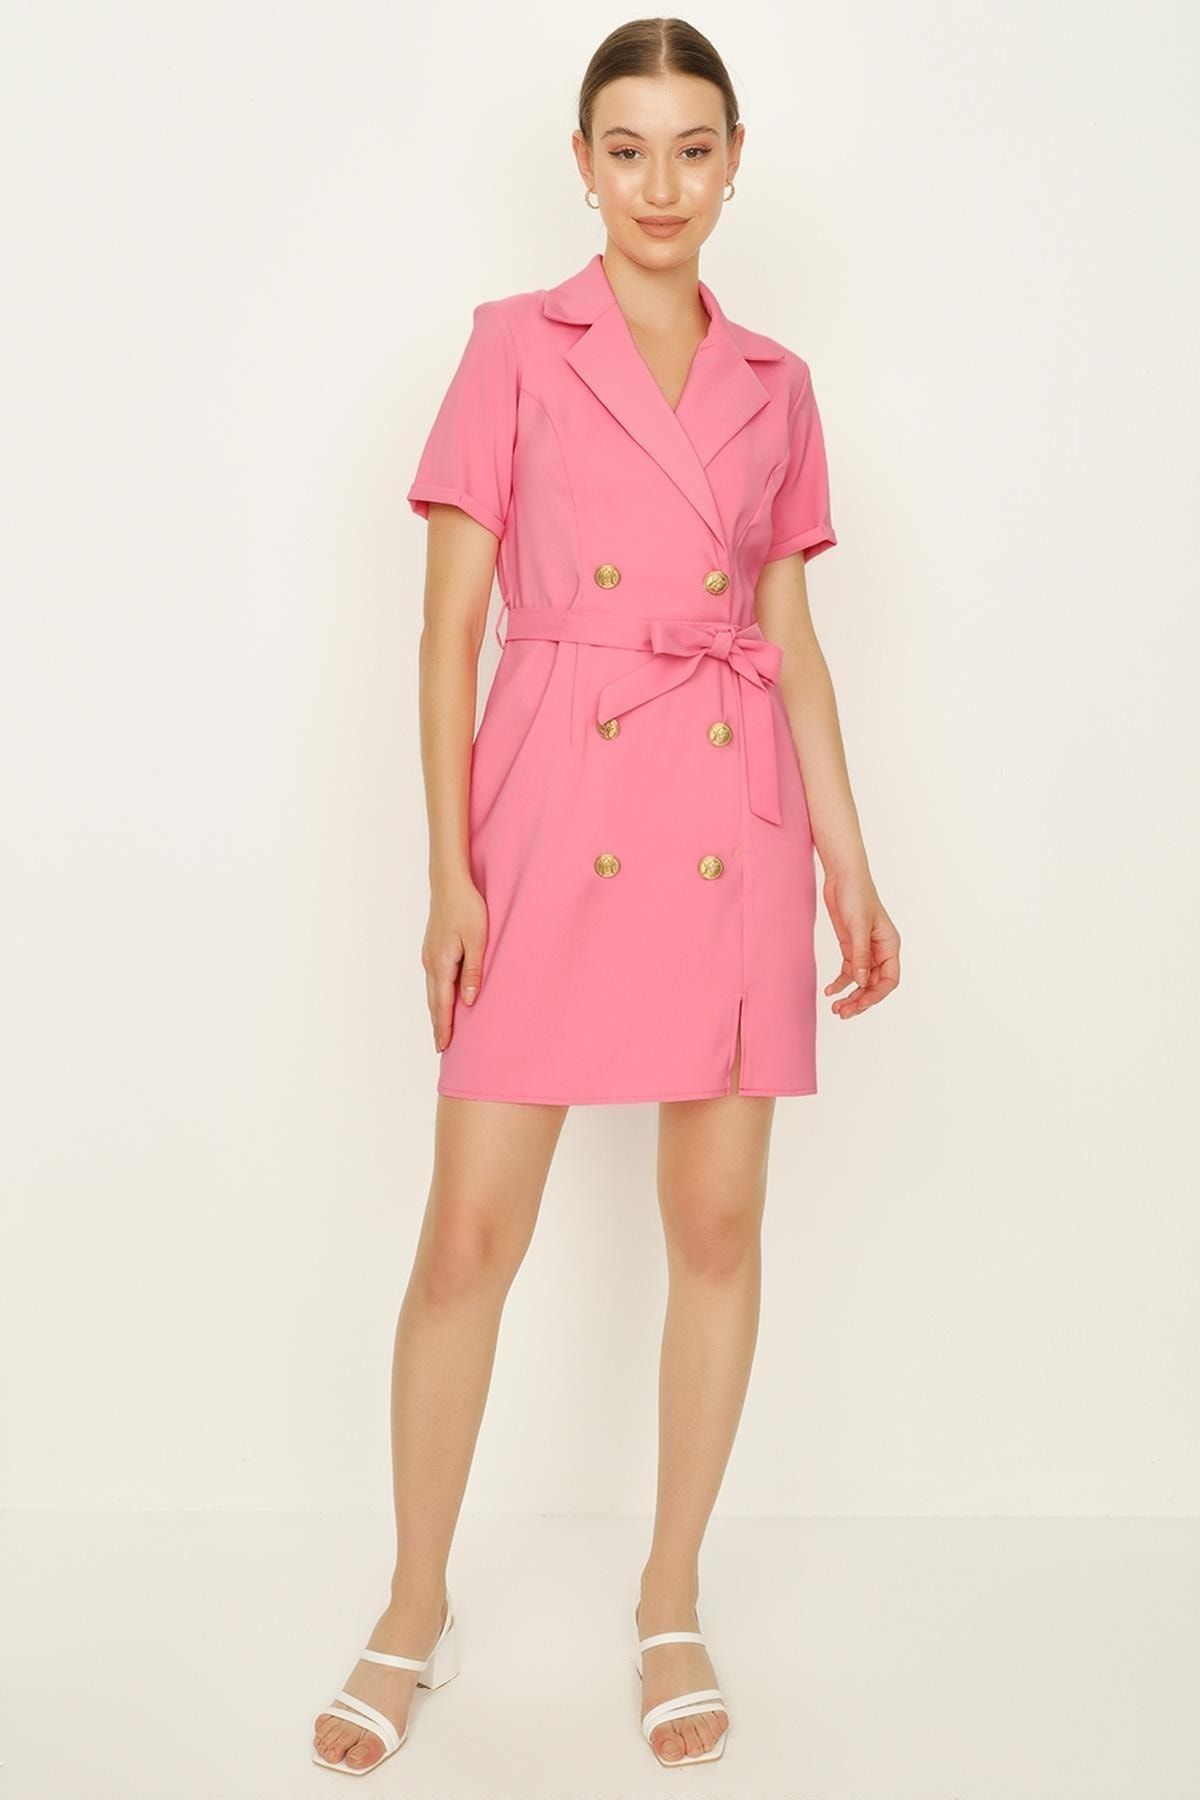 Select Moda Kadın Pembe Düğme Detaylı Kuşaklı Ceket Elbise